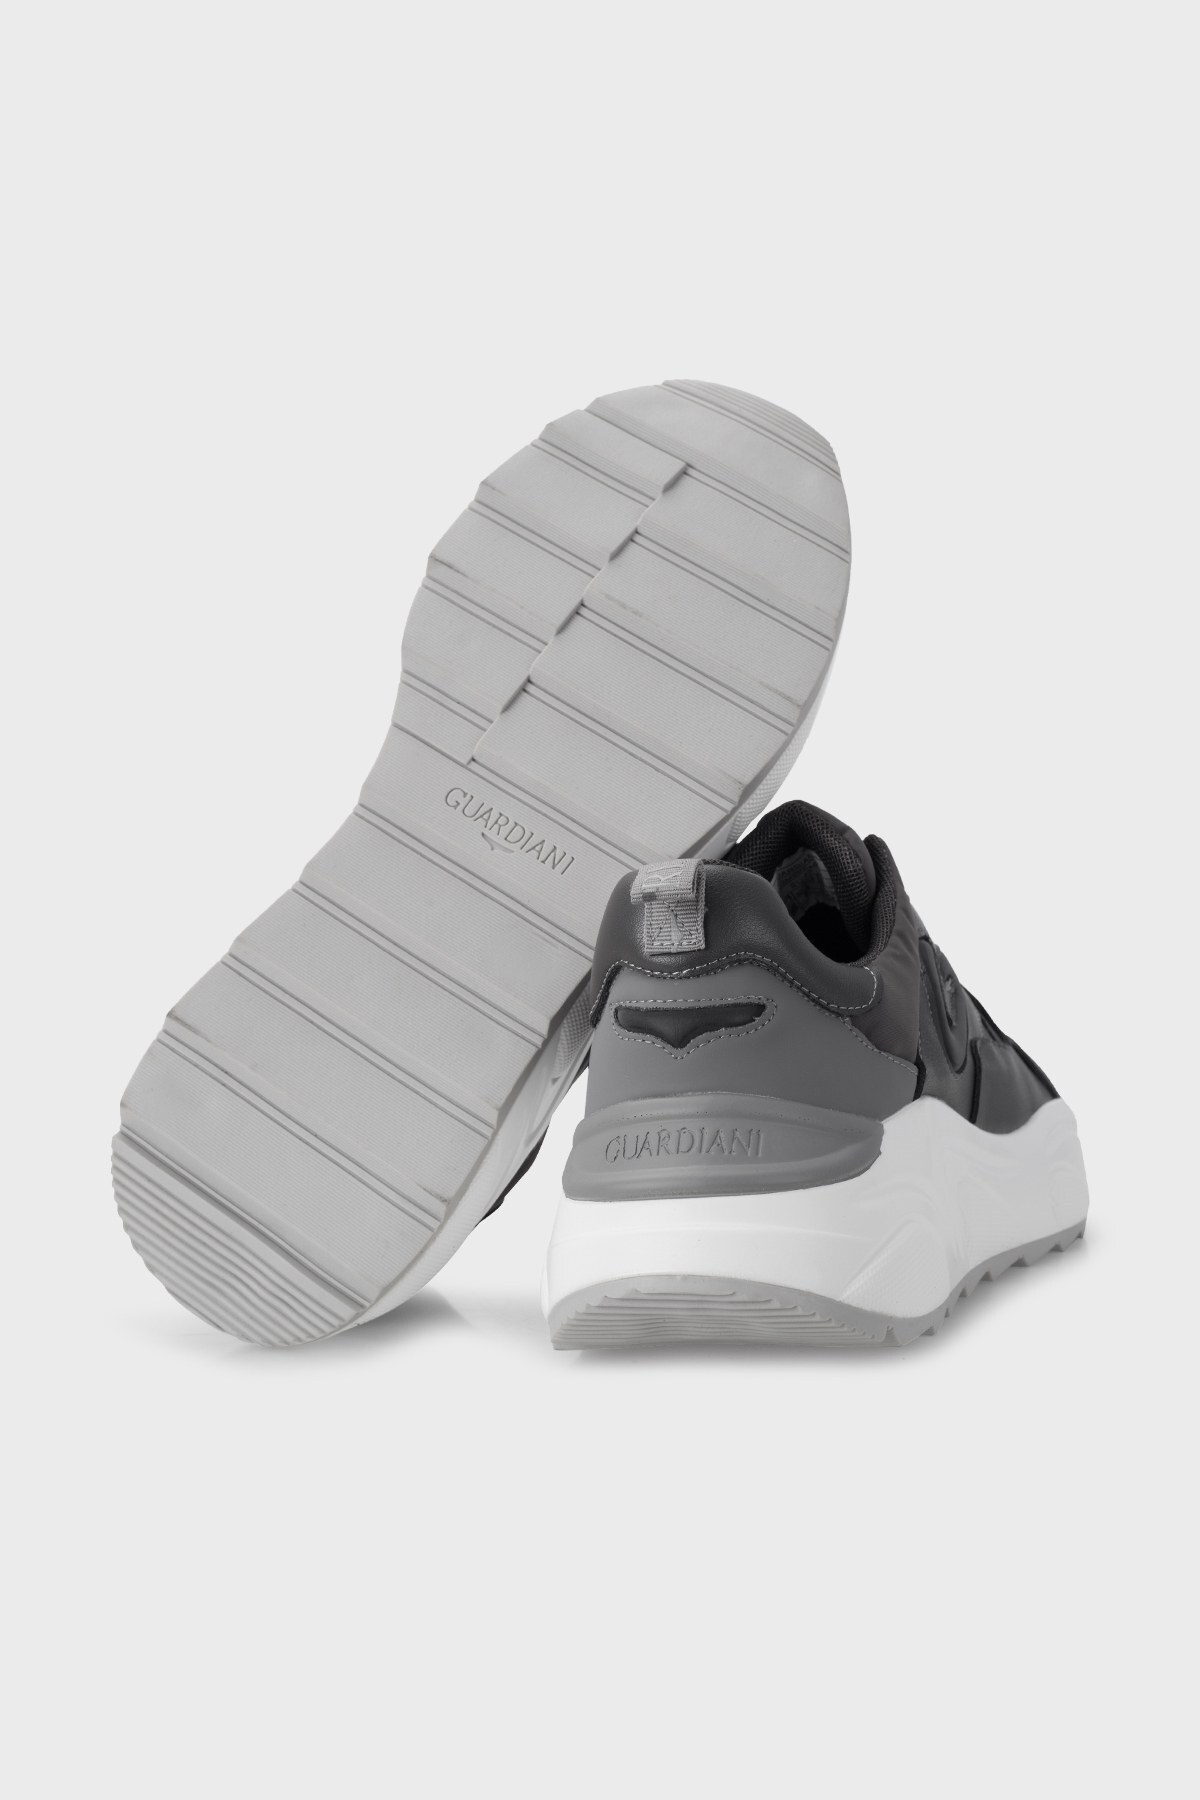 Alberto Guardiani Deri Süet Sneaker Erkek Ayakkabı AGM007406 KOYU GRİ